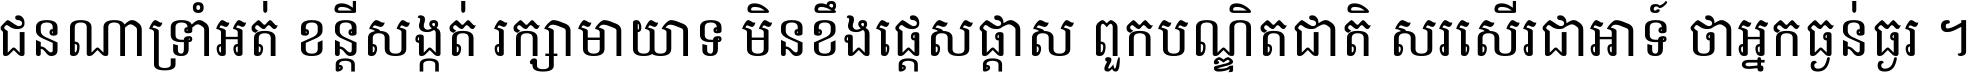 Kh Battambang